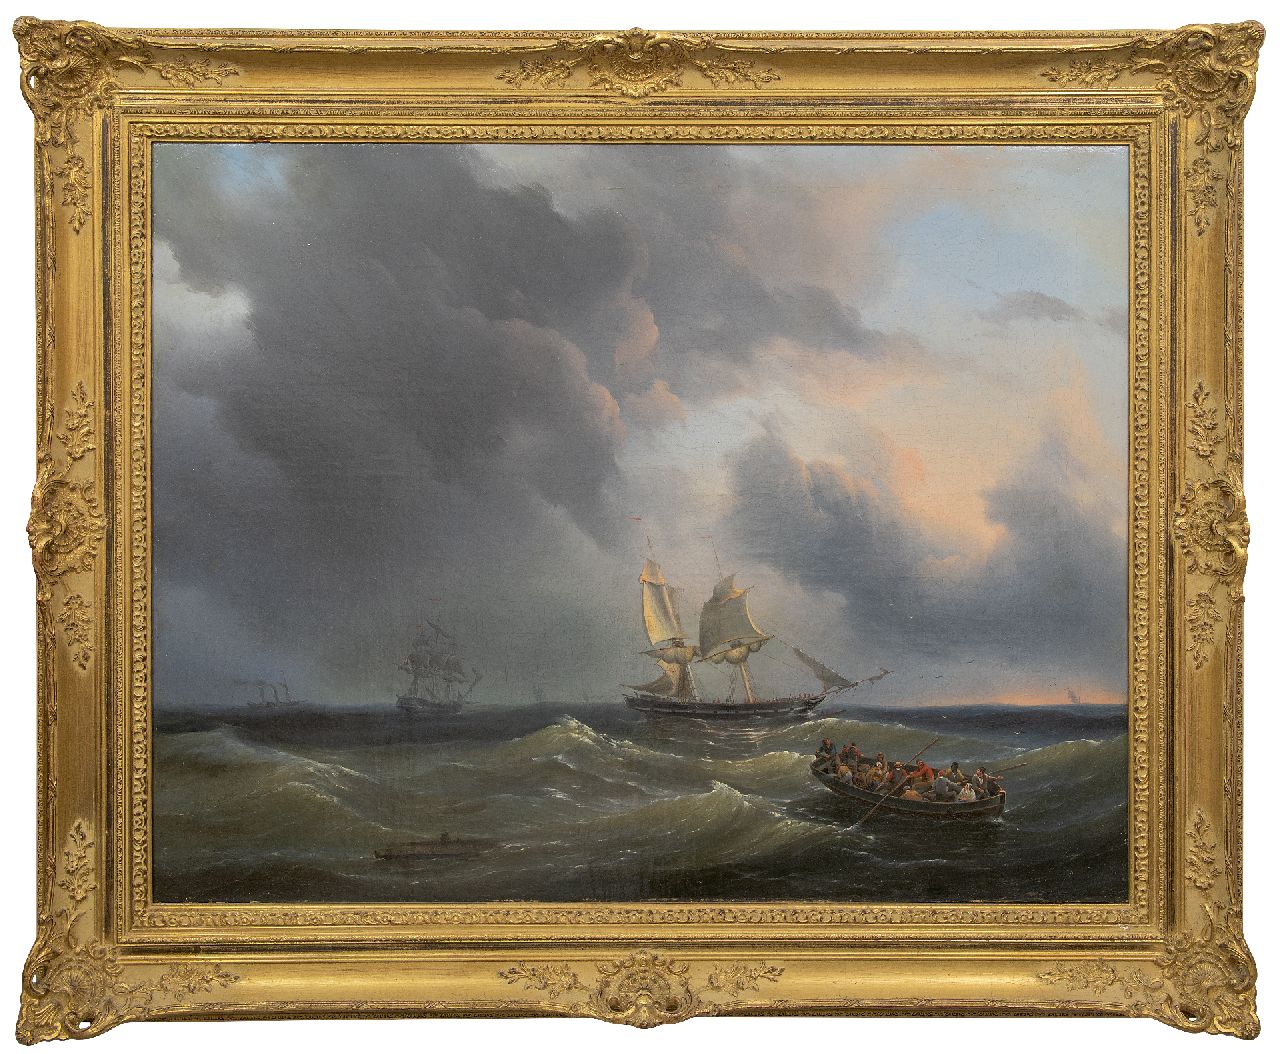 Thomas P.H.  | Pieter Hendrik Thomas | Schilderijen te koop aangeboden | Schepen op woelige zee, olieverf op doek 76,5 x 99,5 cm, gesigneerd linksonder